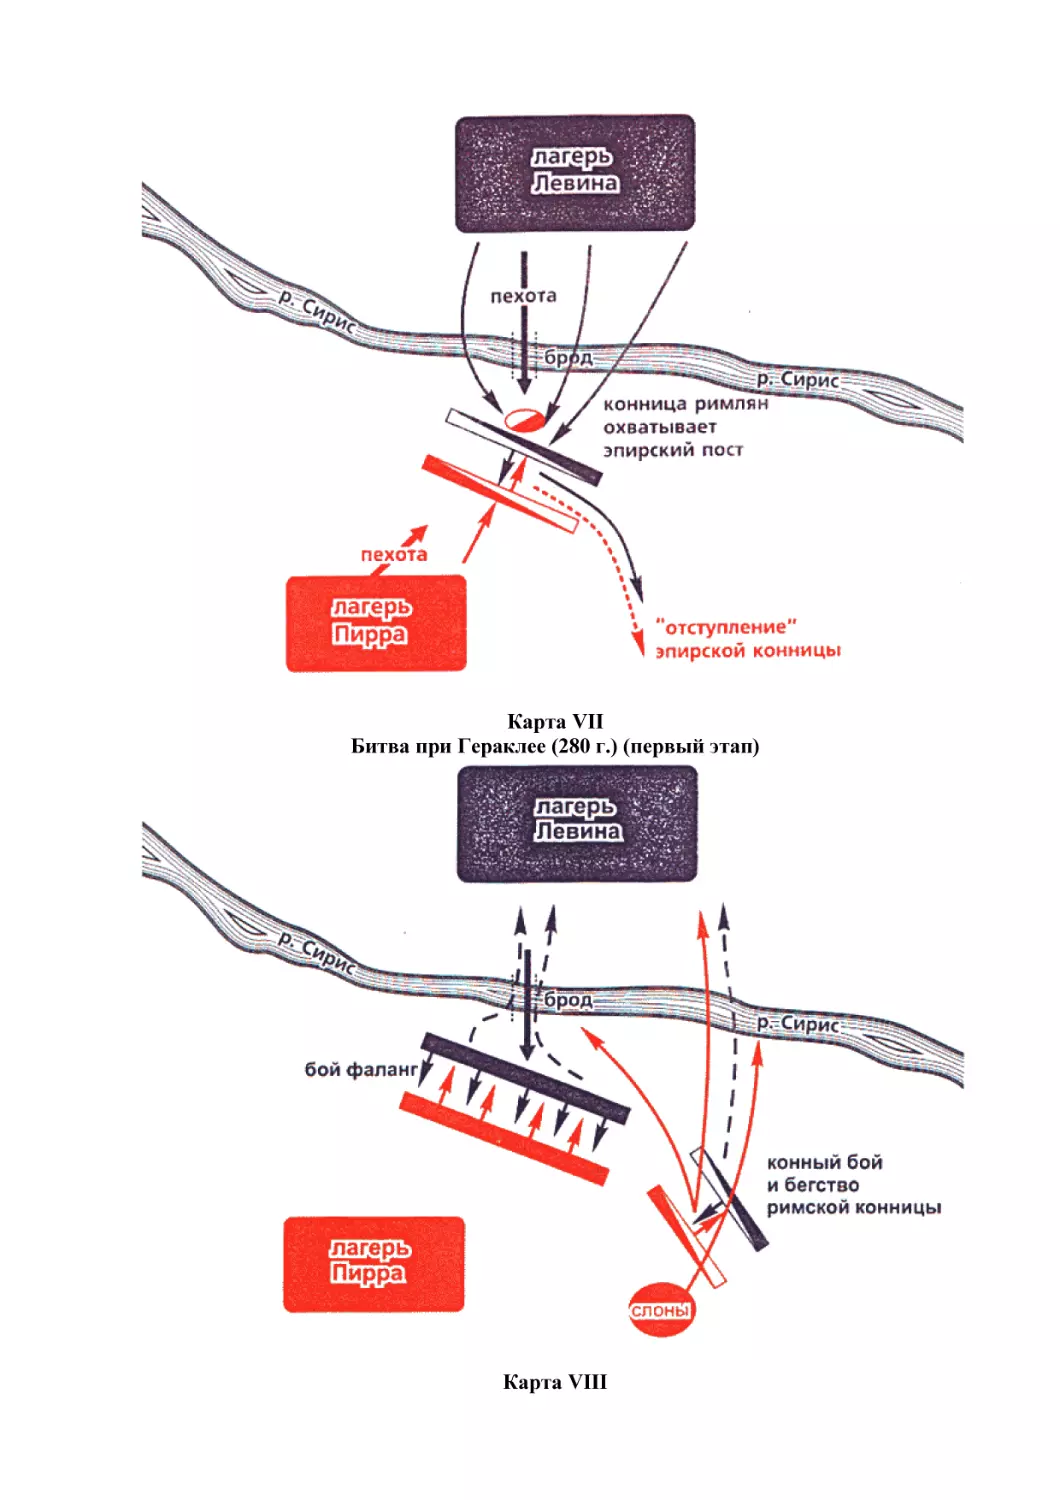 Карта VII
Битва при Гераклее (280 г.) (первый этап)
Карта VIII